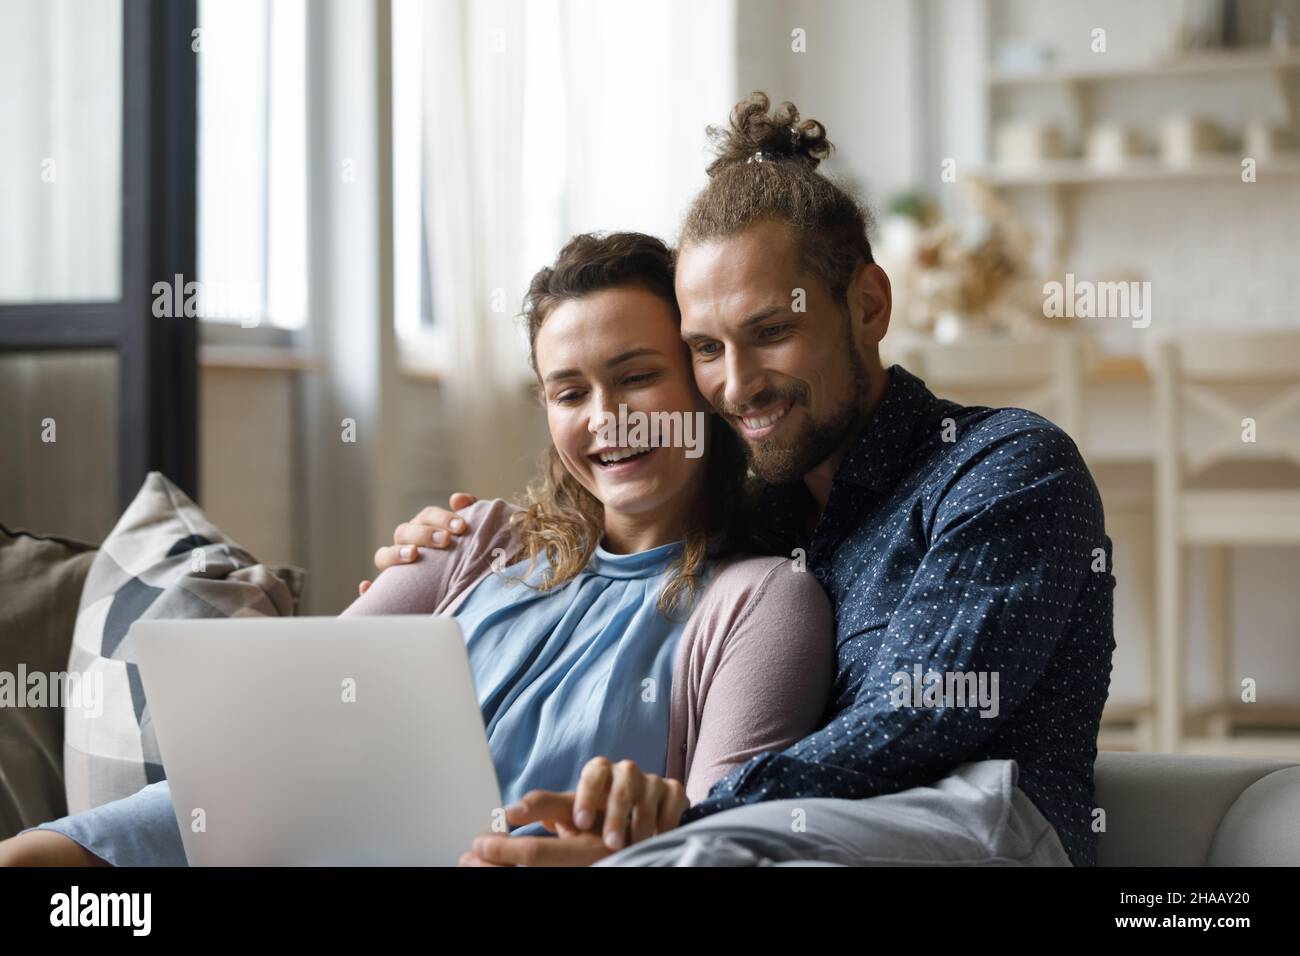 Fröhliches Familienpaar, das sich einen Film auf dem Laptop ansieht Stockfoto